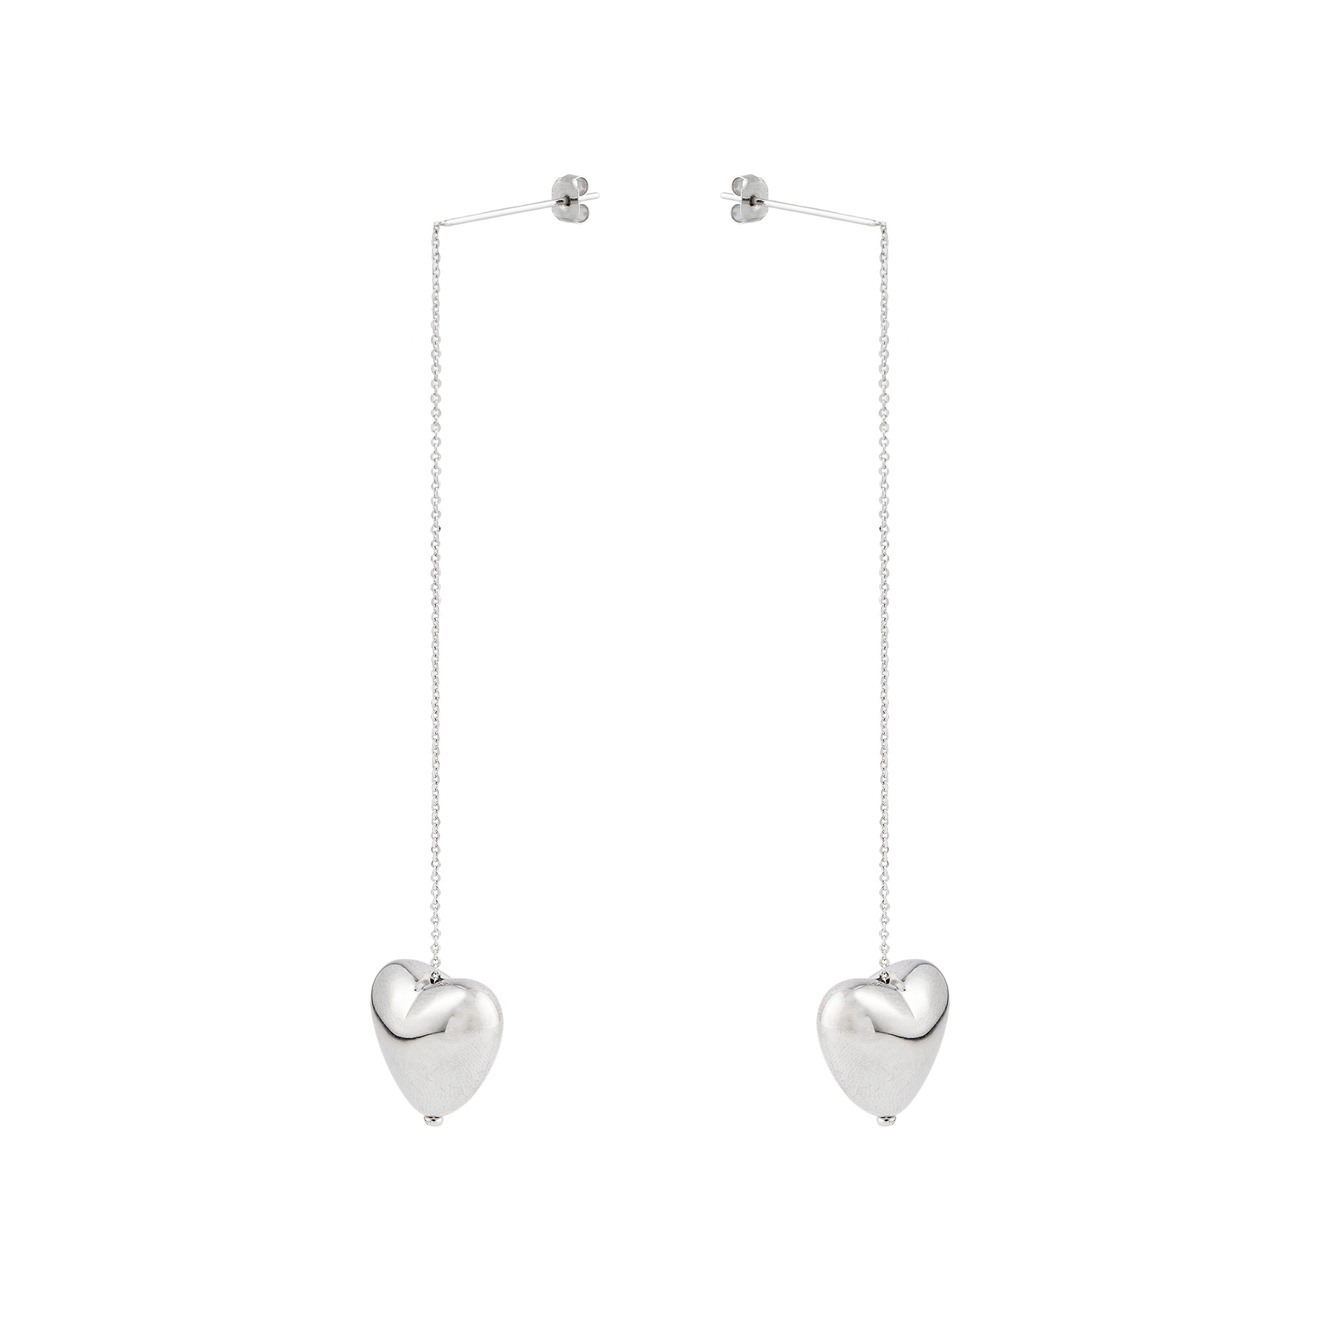 Aloud Серебристые длинные серьги протяжки с объемными сердцами aqua серебристые серьги кольца с жемчужными сердцами